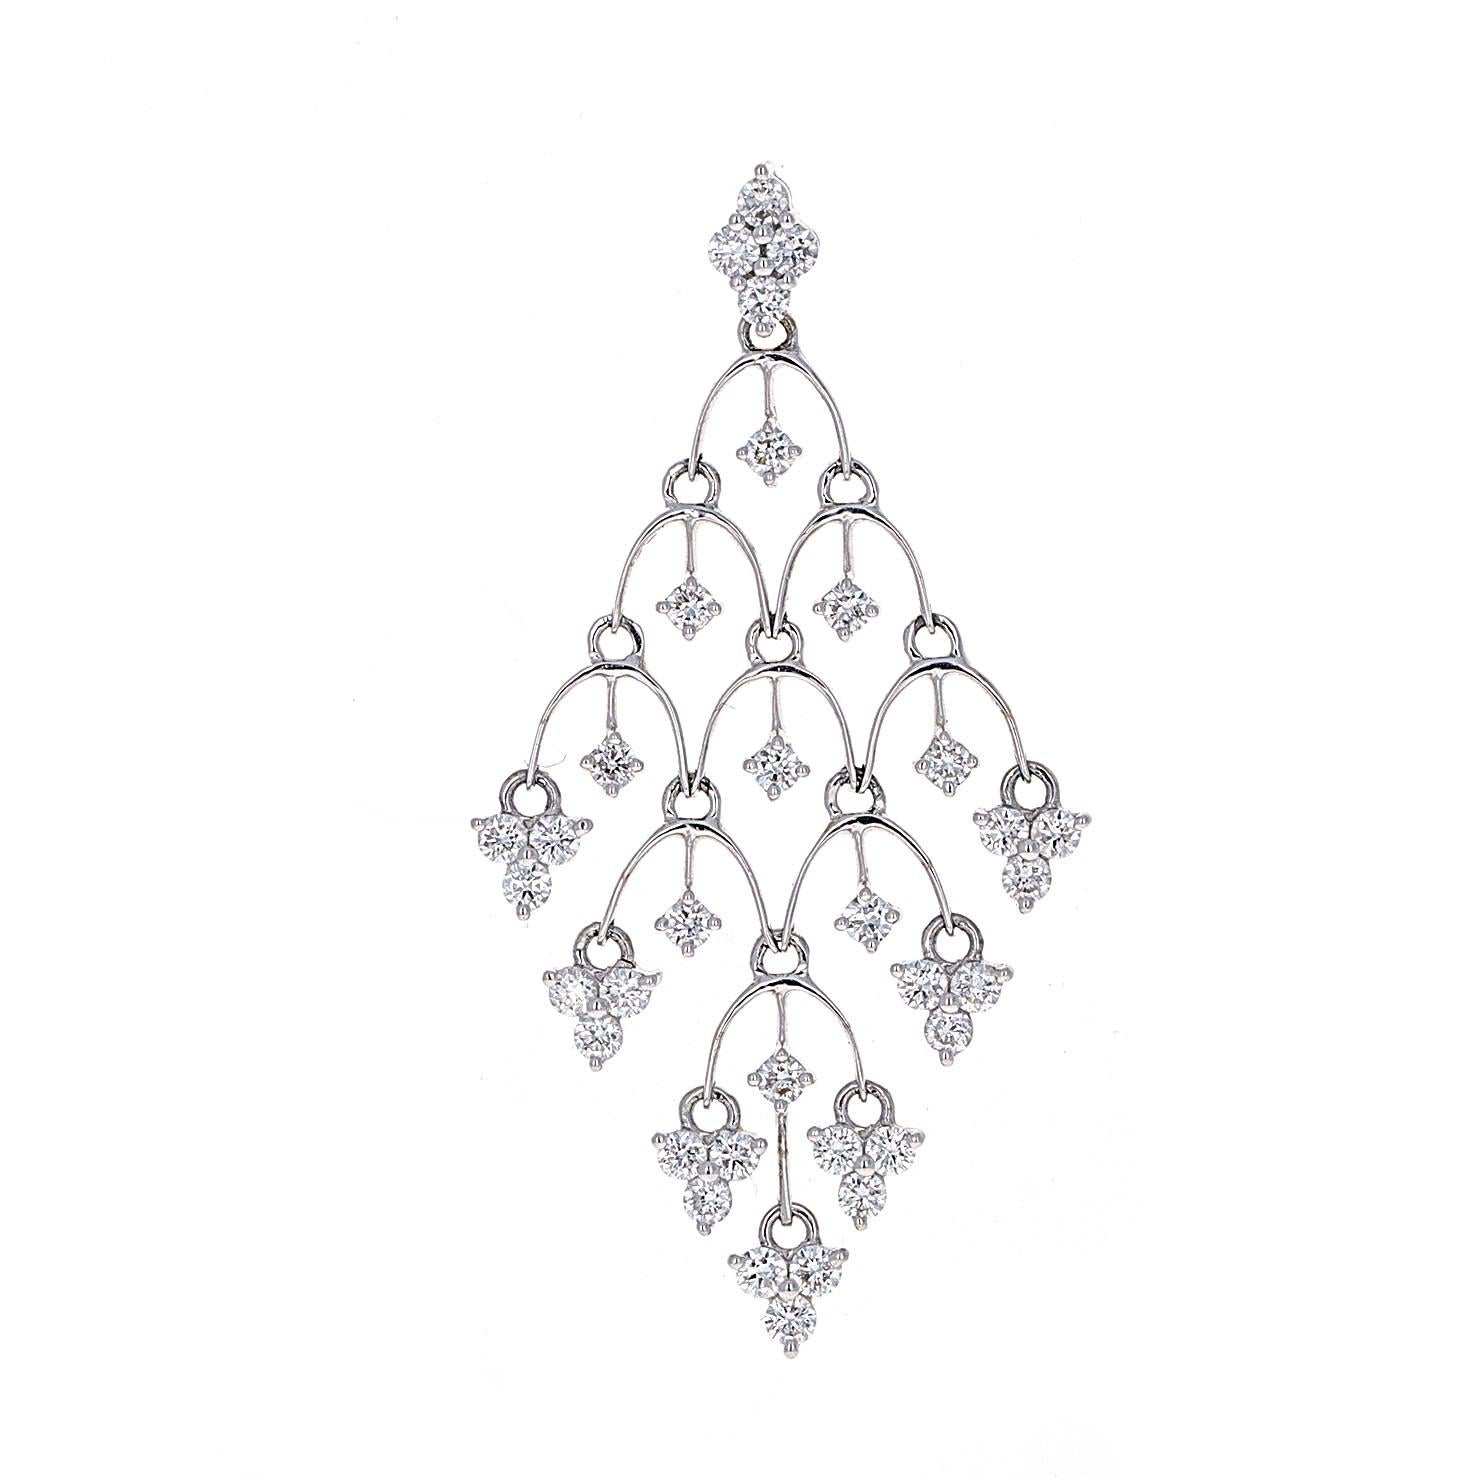 Contemporary White Diamond Dangling Earrings 18k White Gold